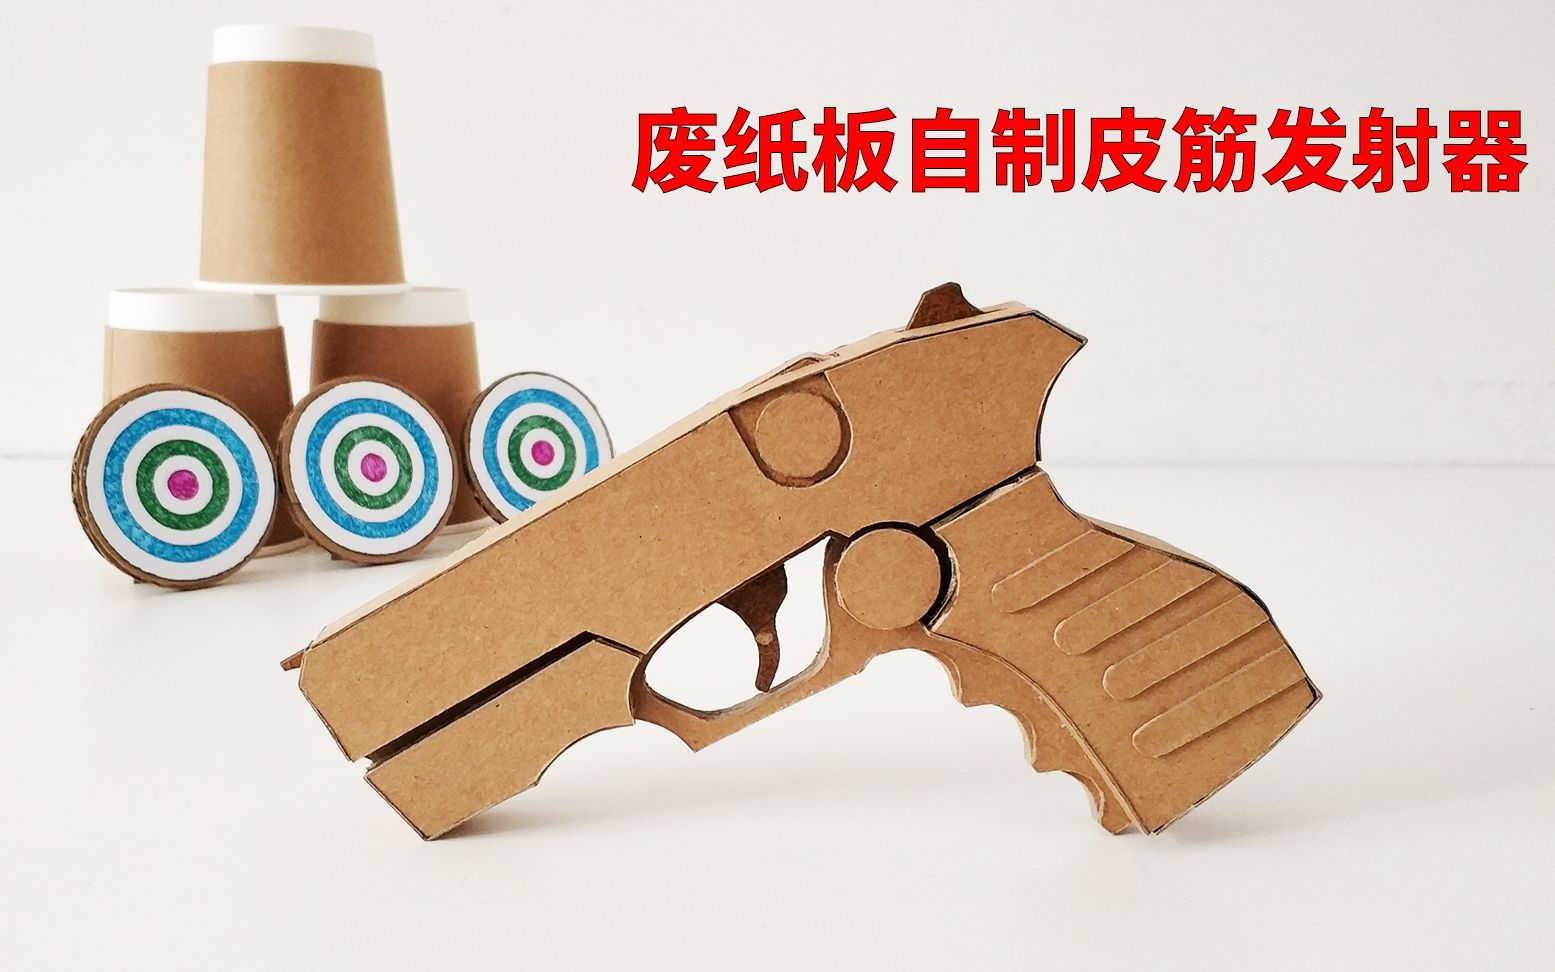 萝卜枪重力1911幼崽3d打印迷你小手枪解压玩具减压抢网红胡萝卜刀-Taobao